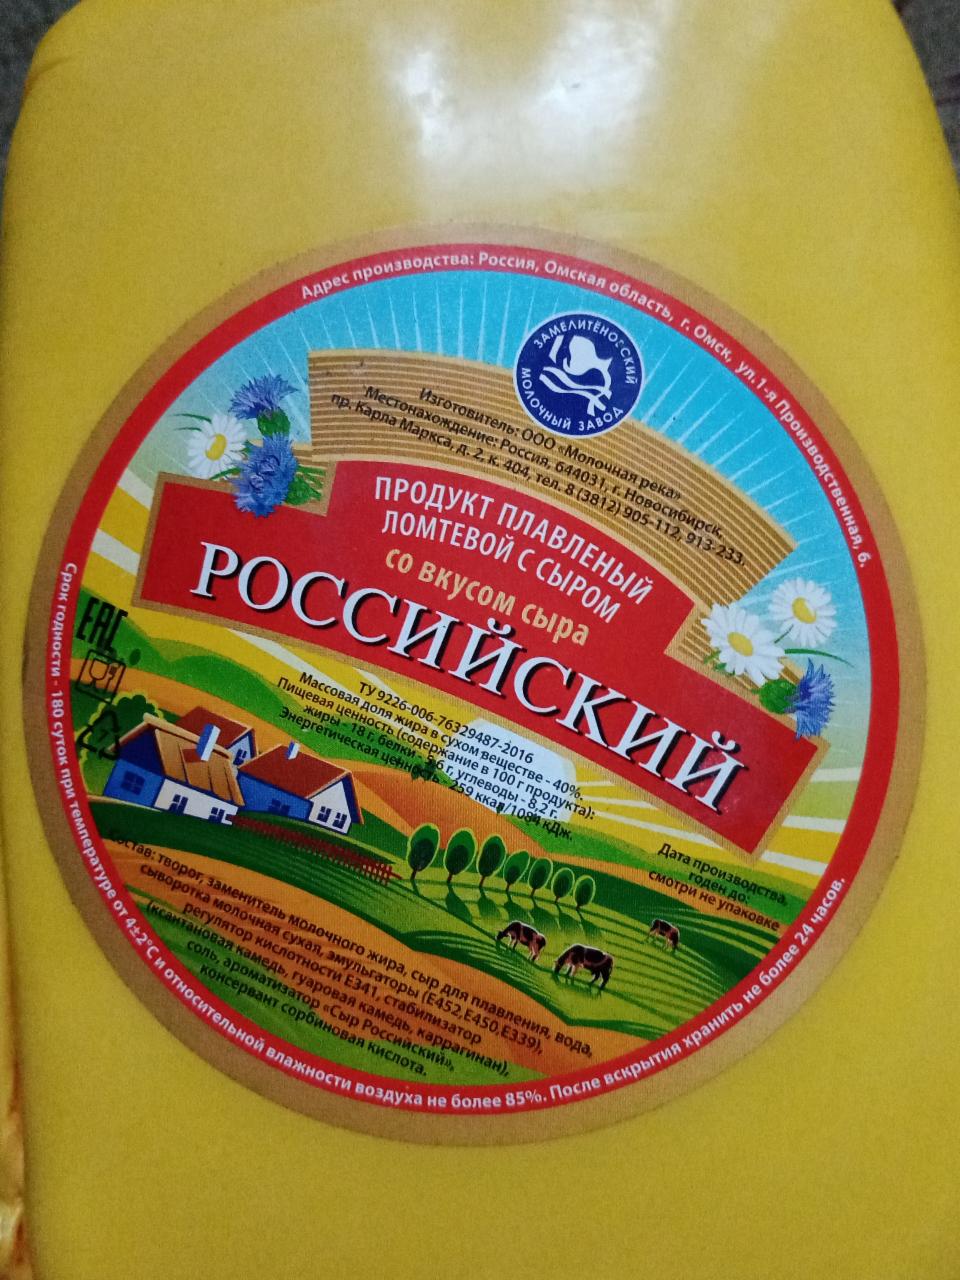 Фото - Сыр плавленый российский 40% Замелитеновский молочный завод